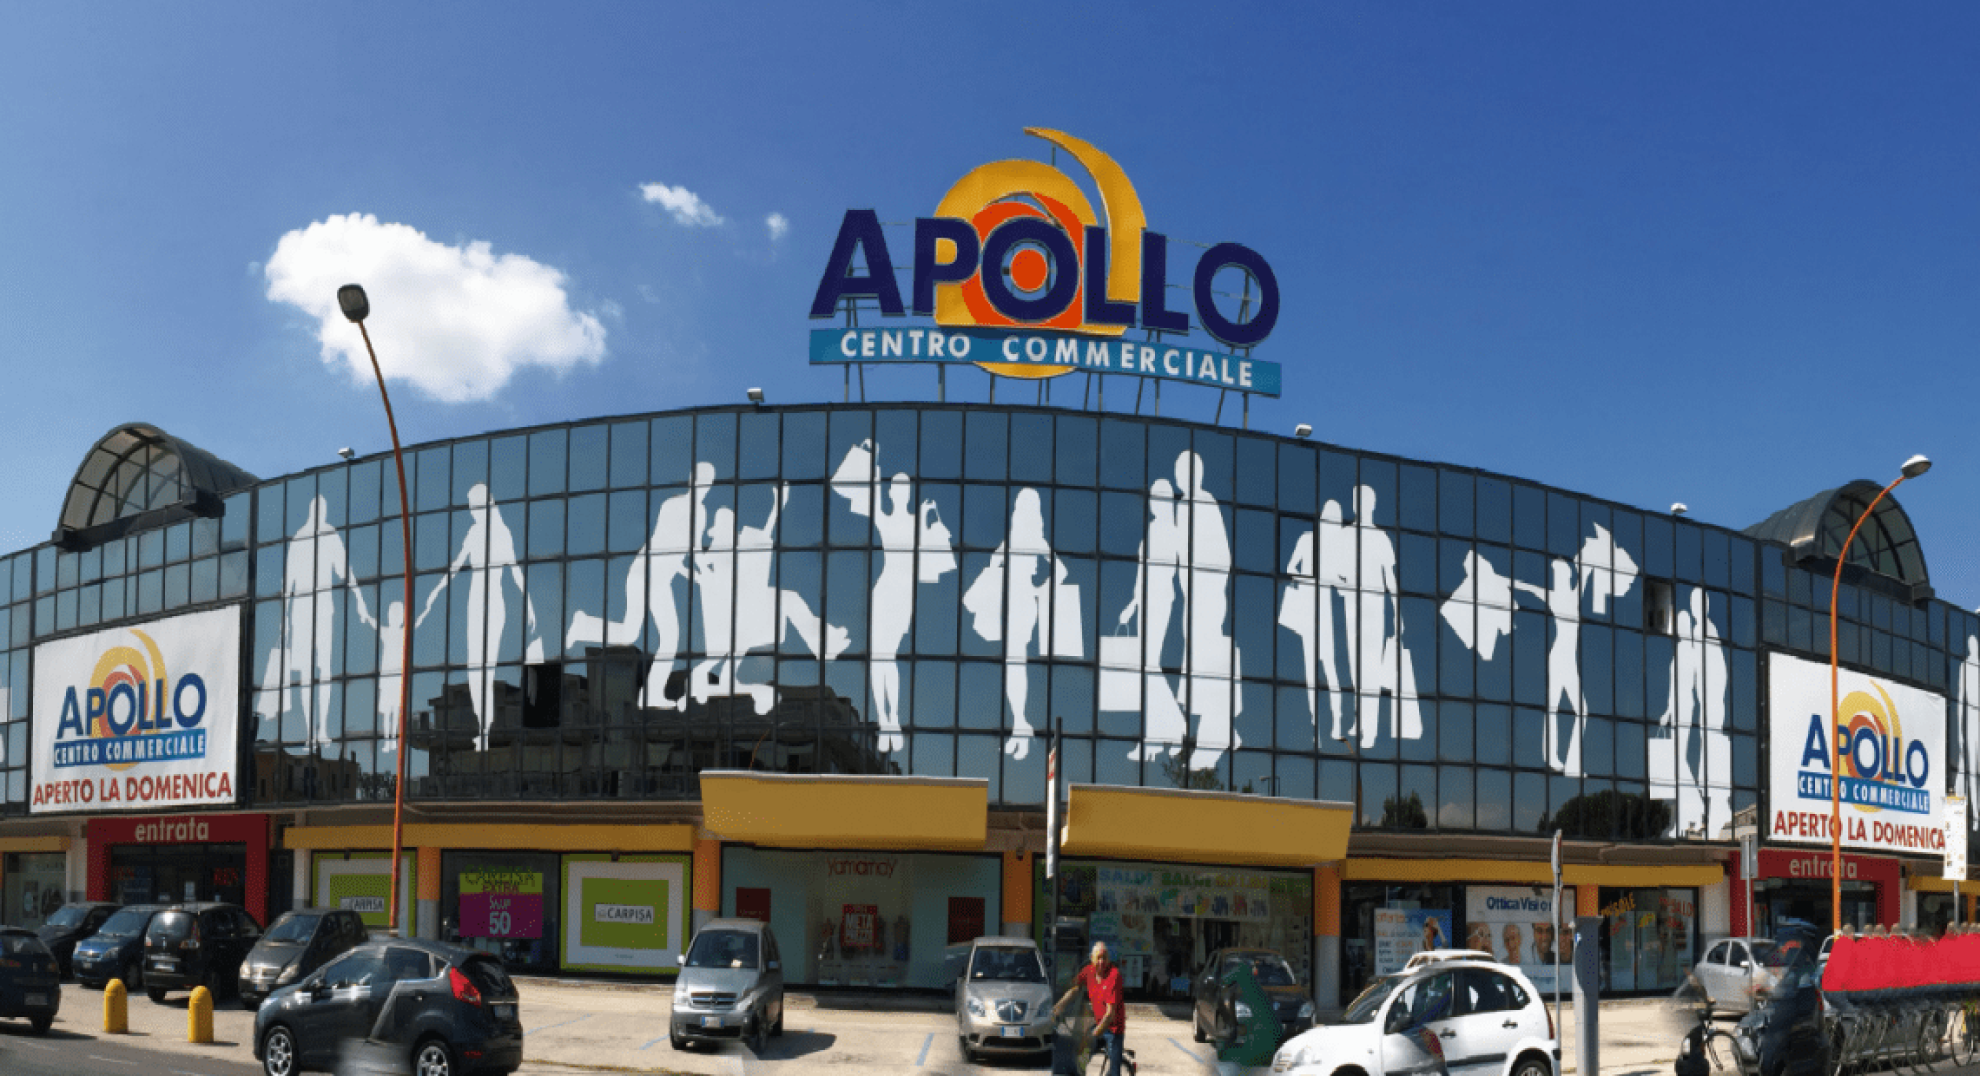 Casapulla Centro Commerciale Apollo - , Casapulla